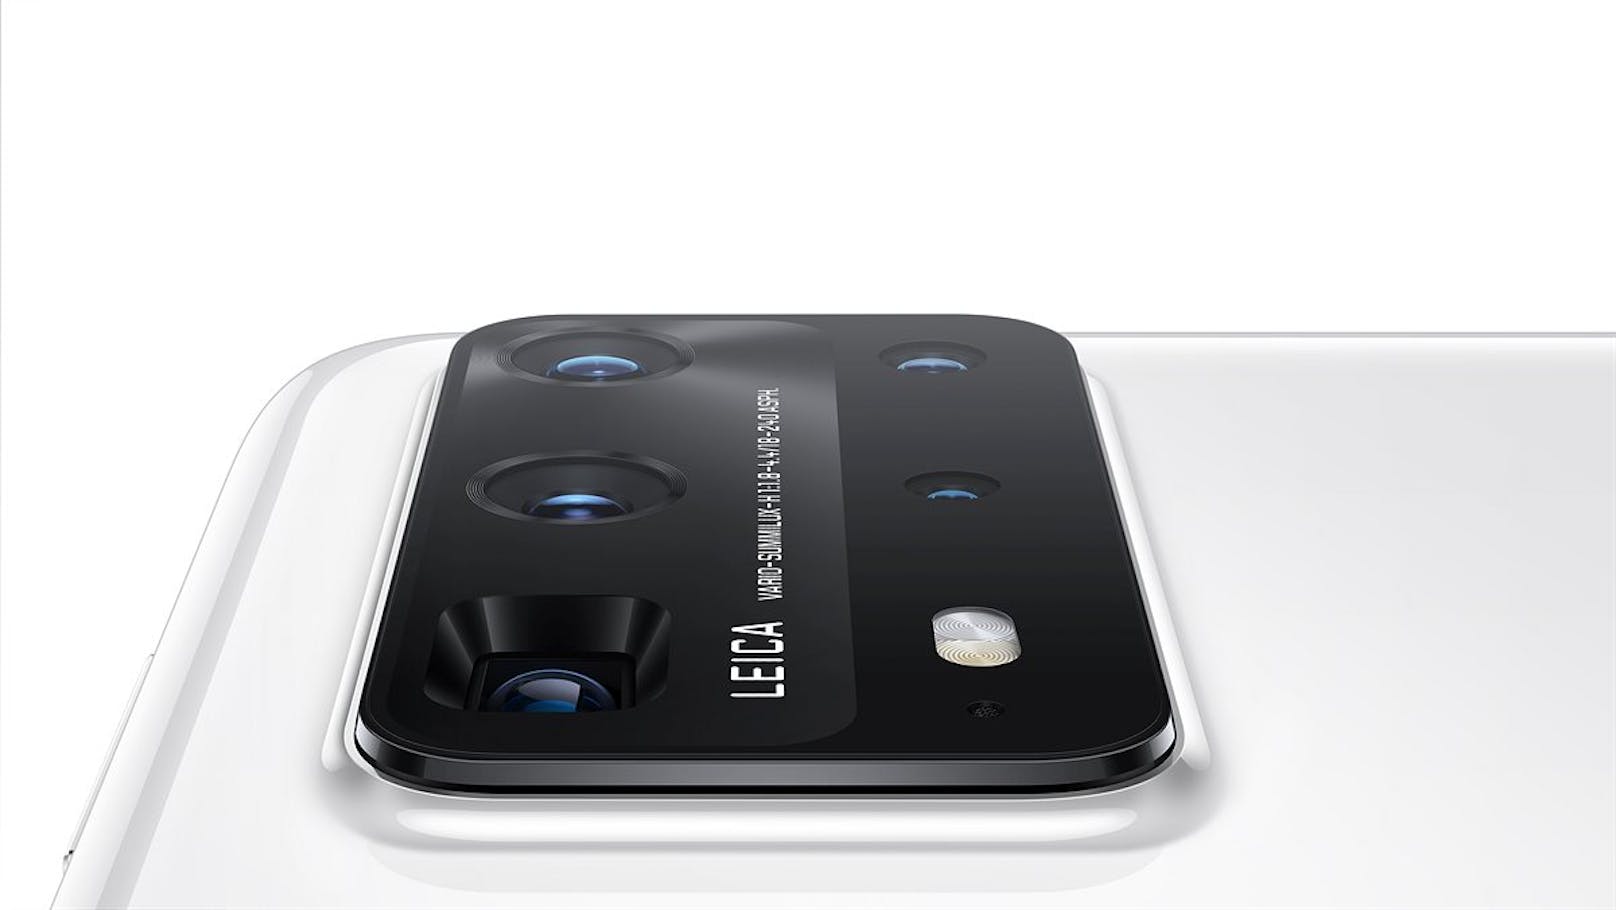 Ein All-in-One-Kameramodul integriert alle Kamerakomponenten auf der Rückseite des Smartphones.